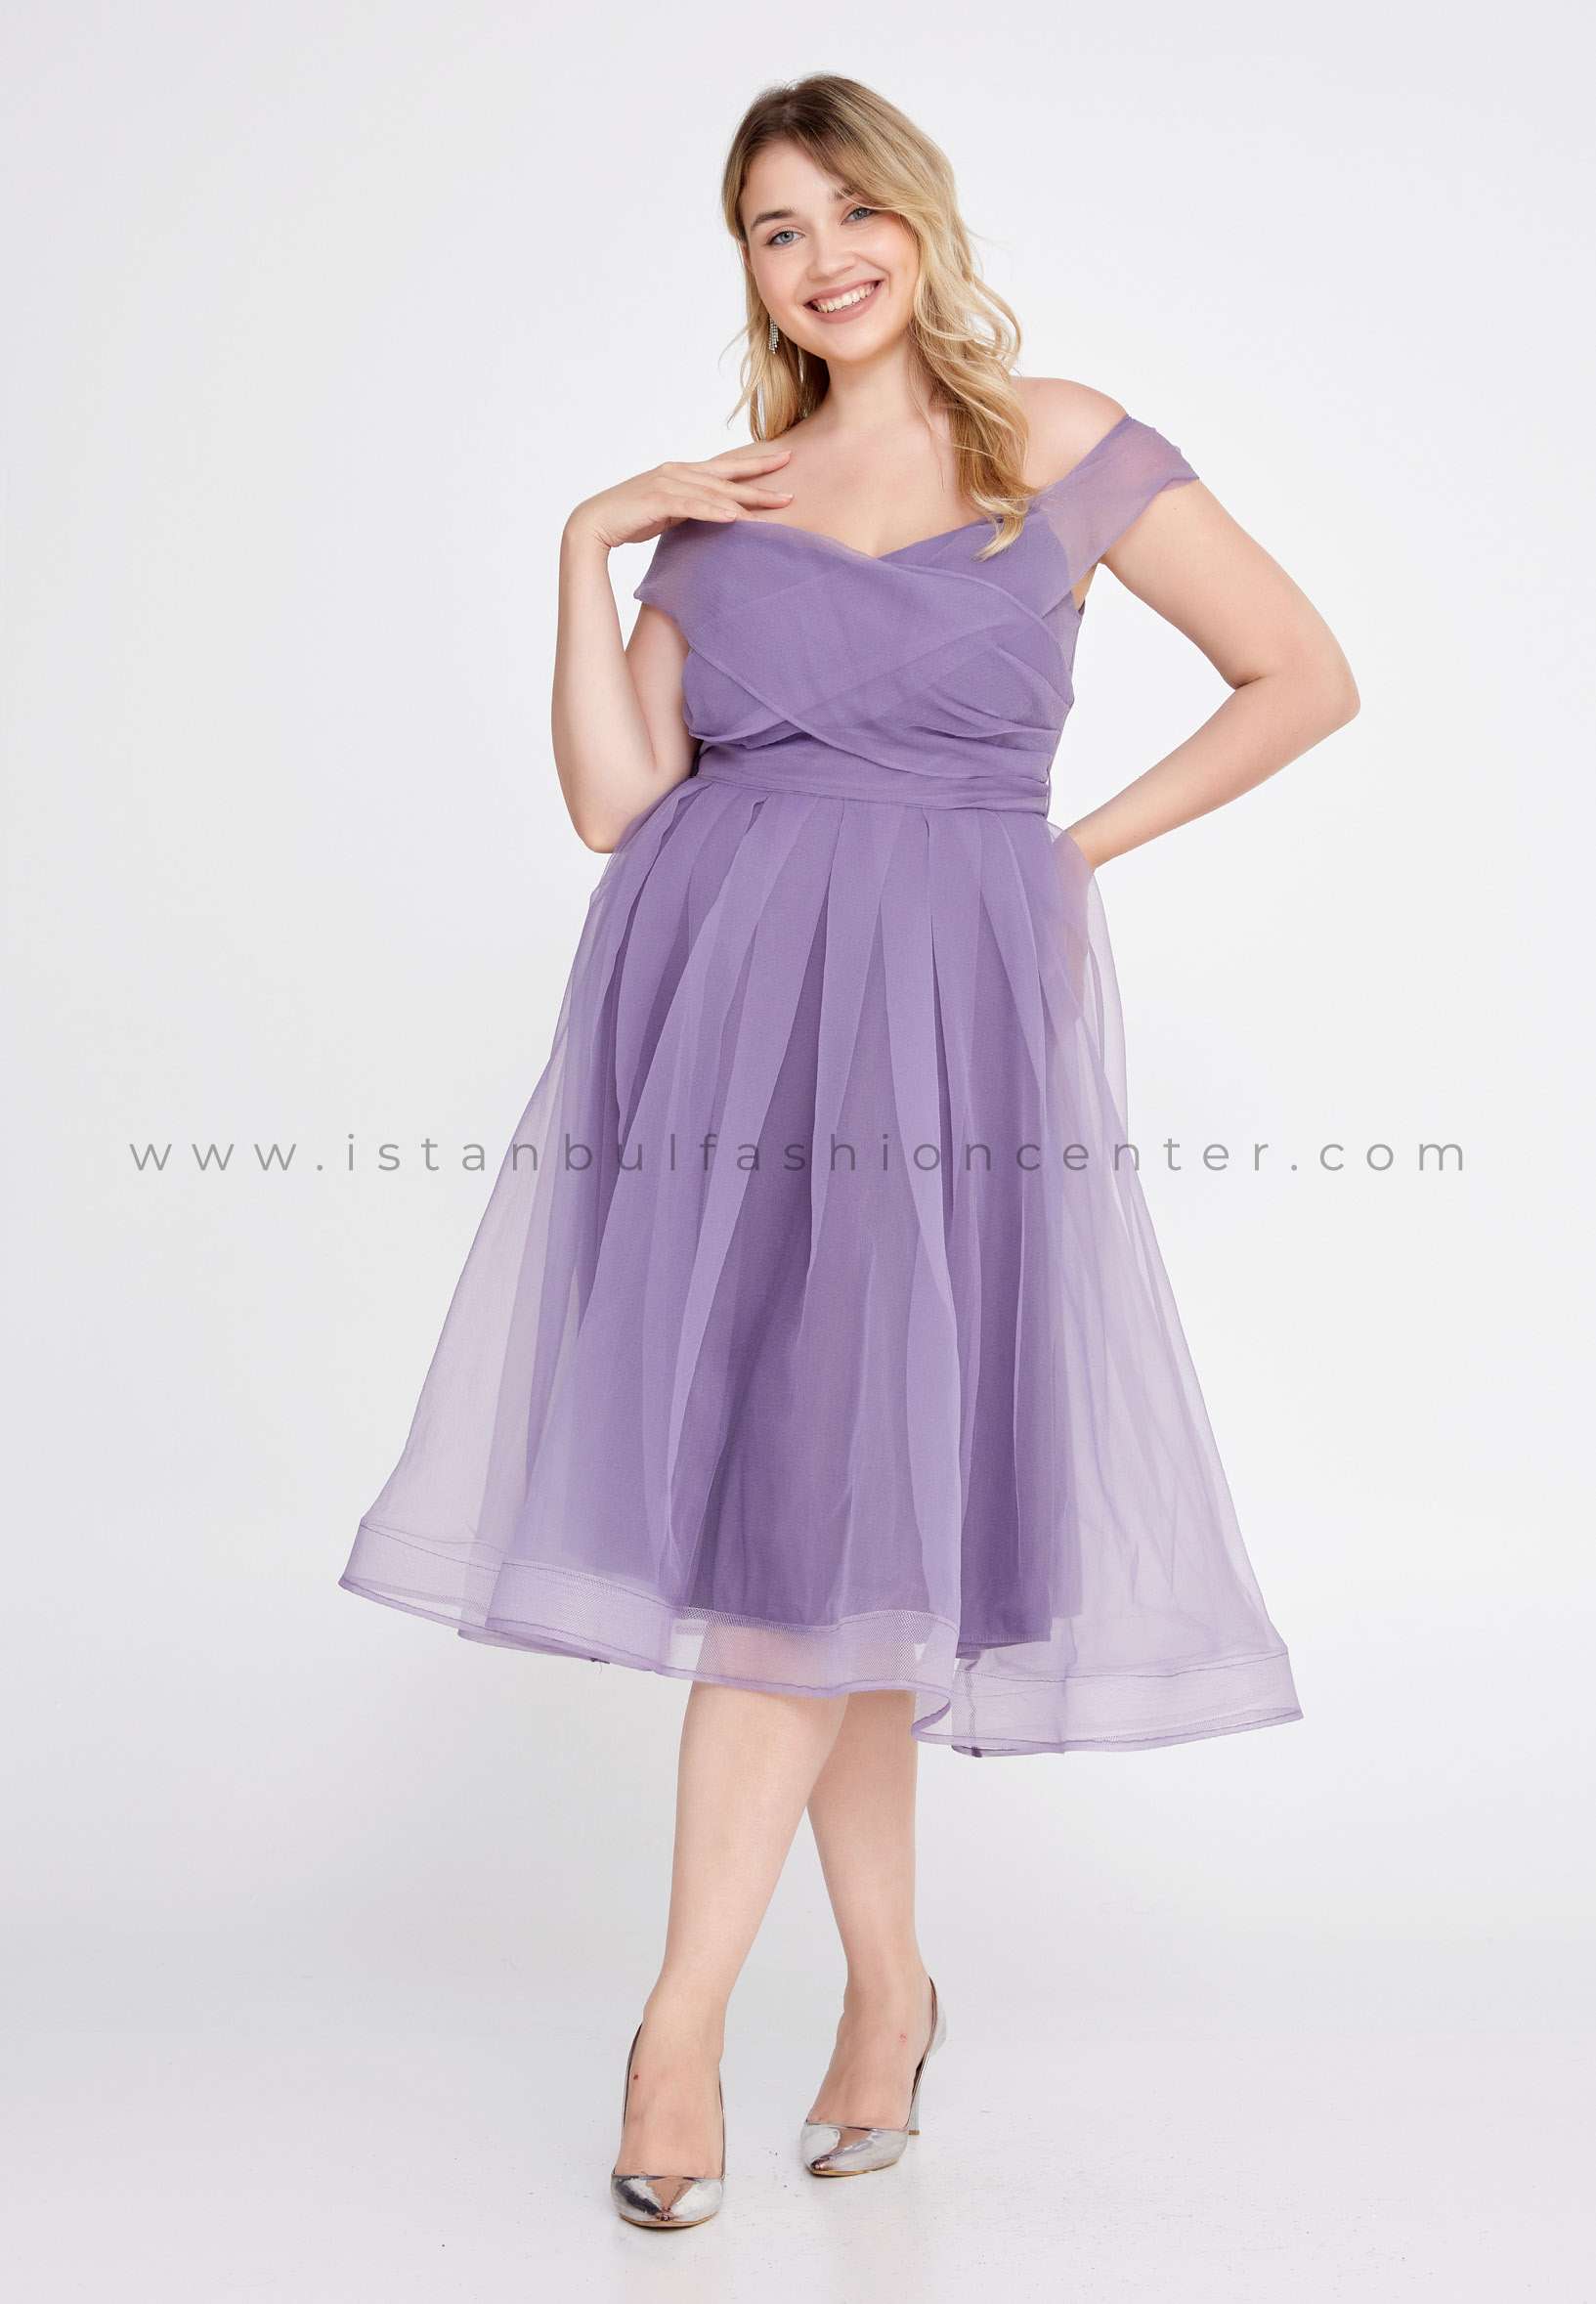 Australsk person gøre det muligt for syndrom ERŞE BREEZE Off Shoulder Midi Tulle A - Line Plus Size Purple Prom Dress  Brz6046-blav